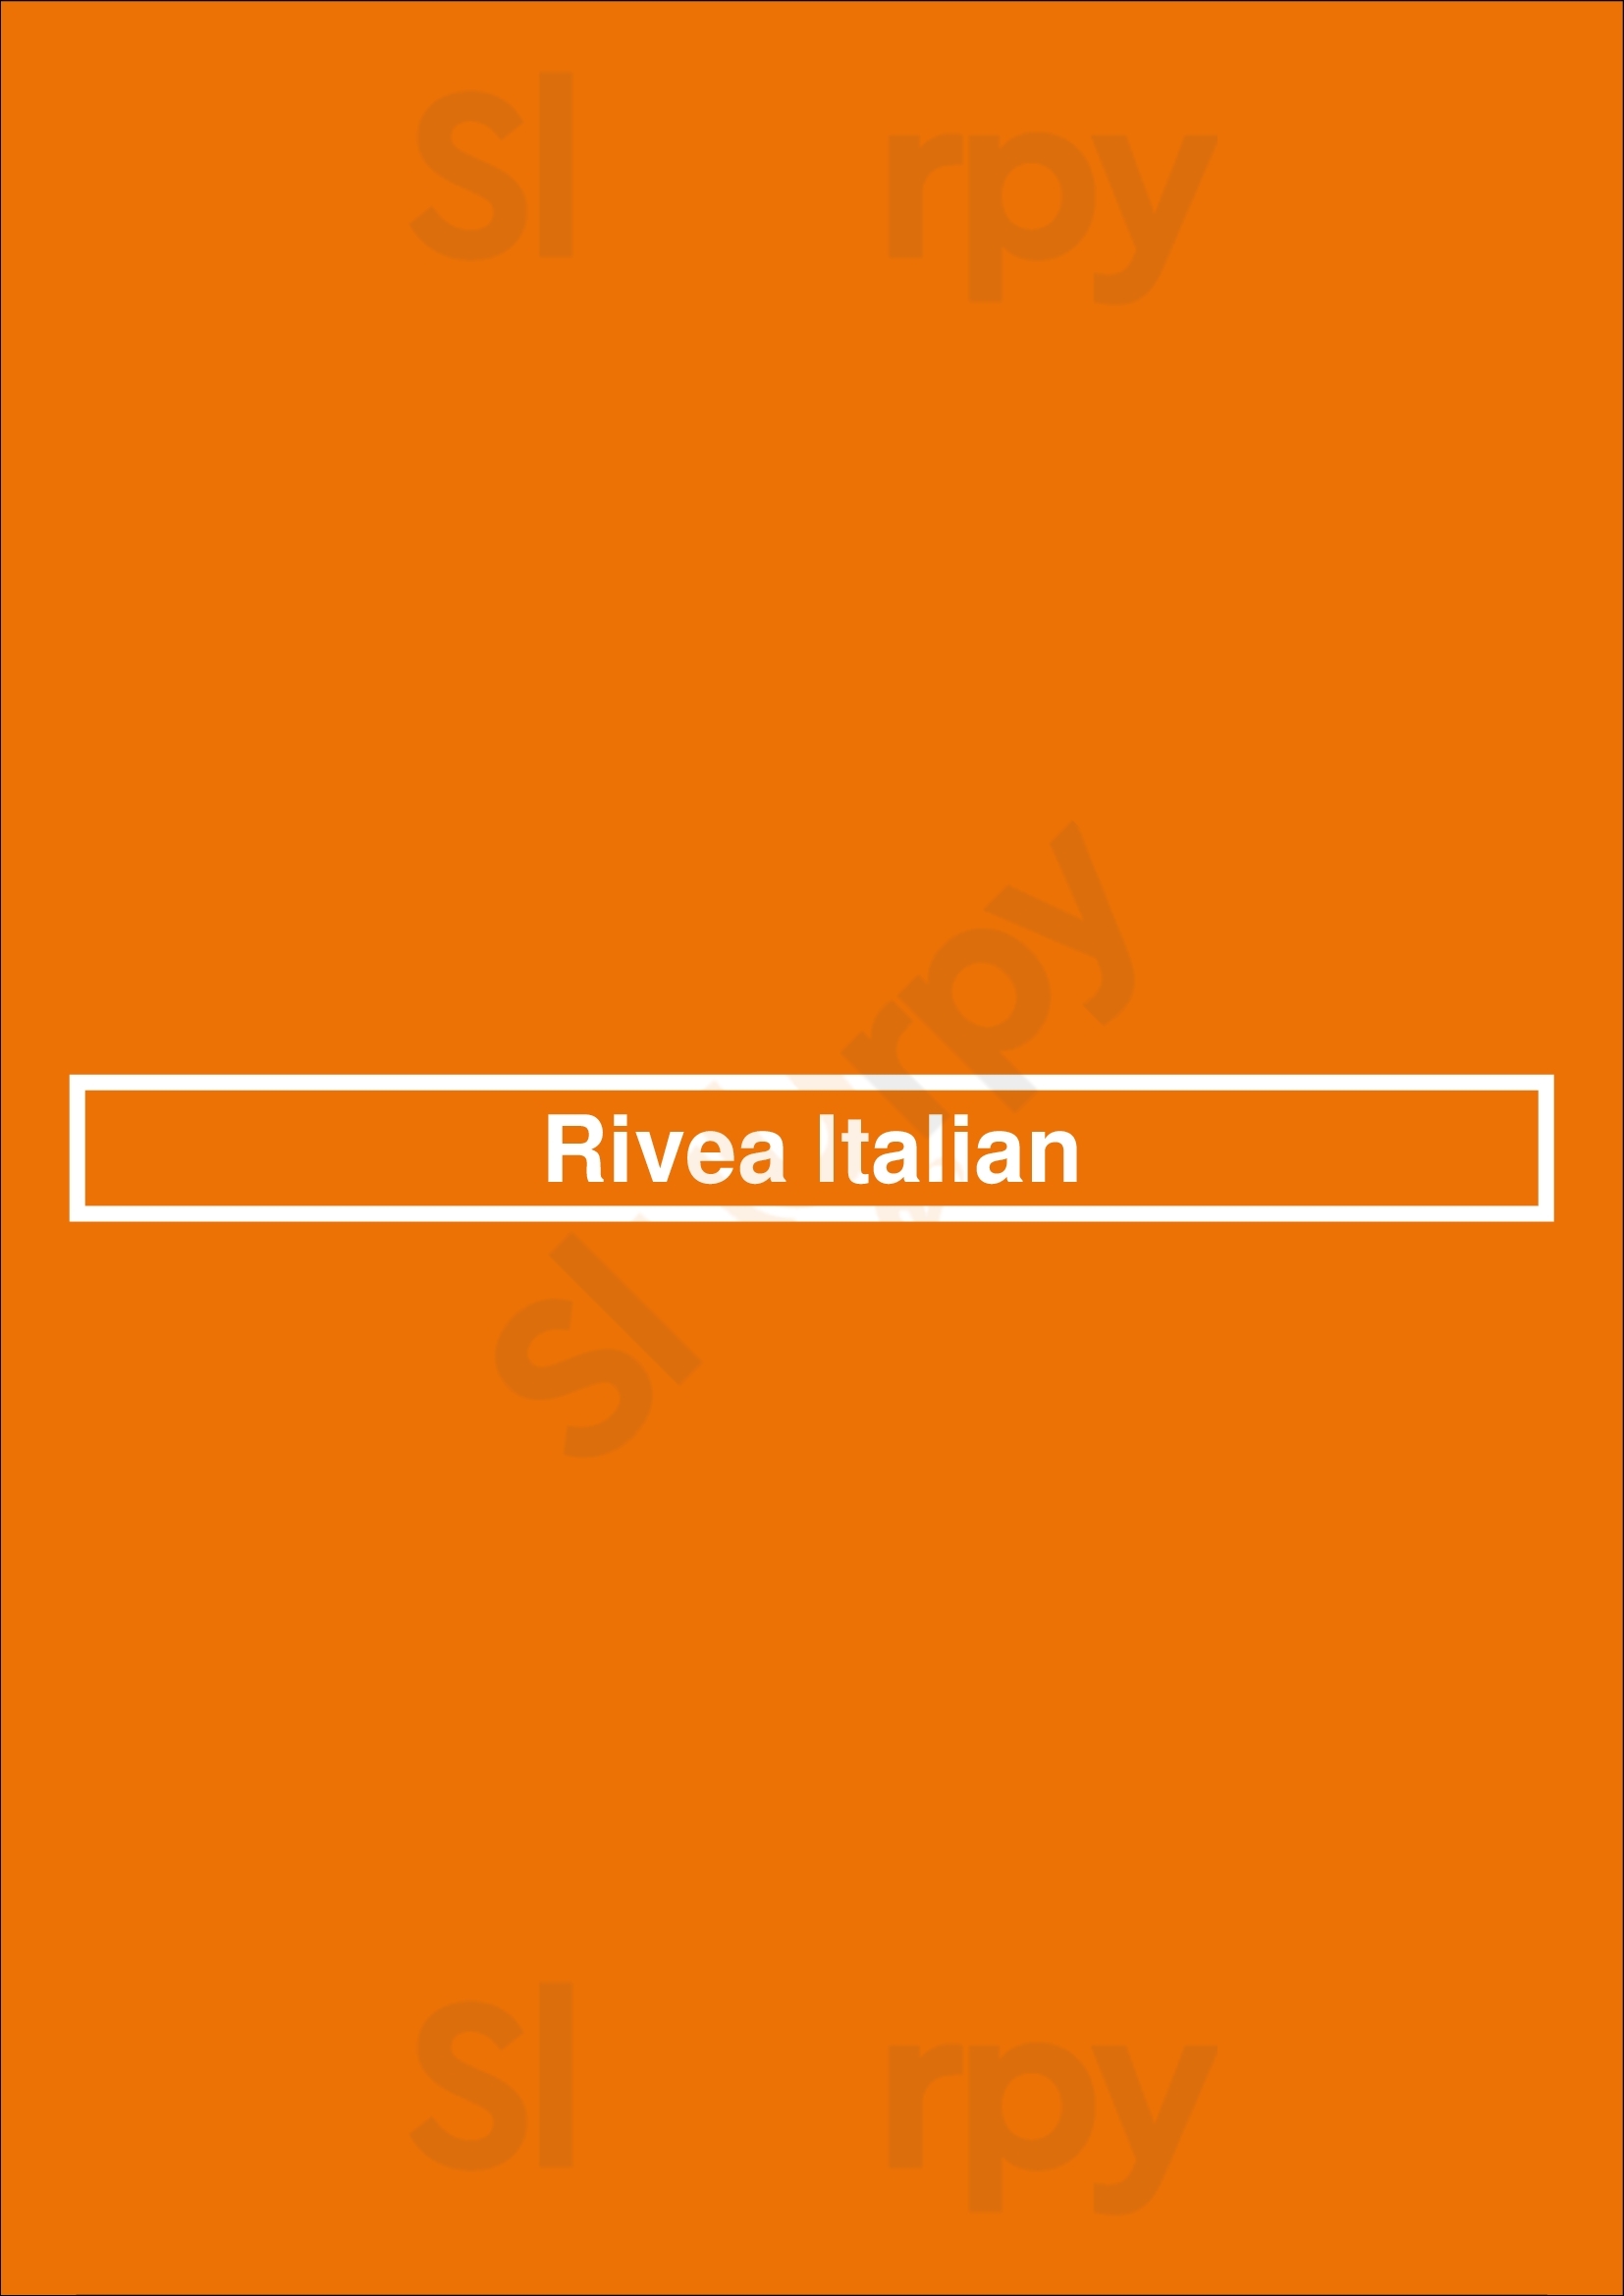 Rivea Italian Broadbeach Menu - 1